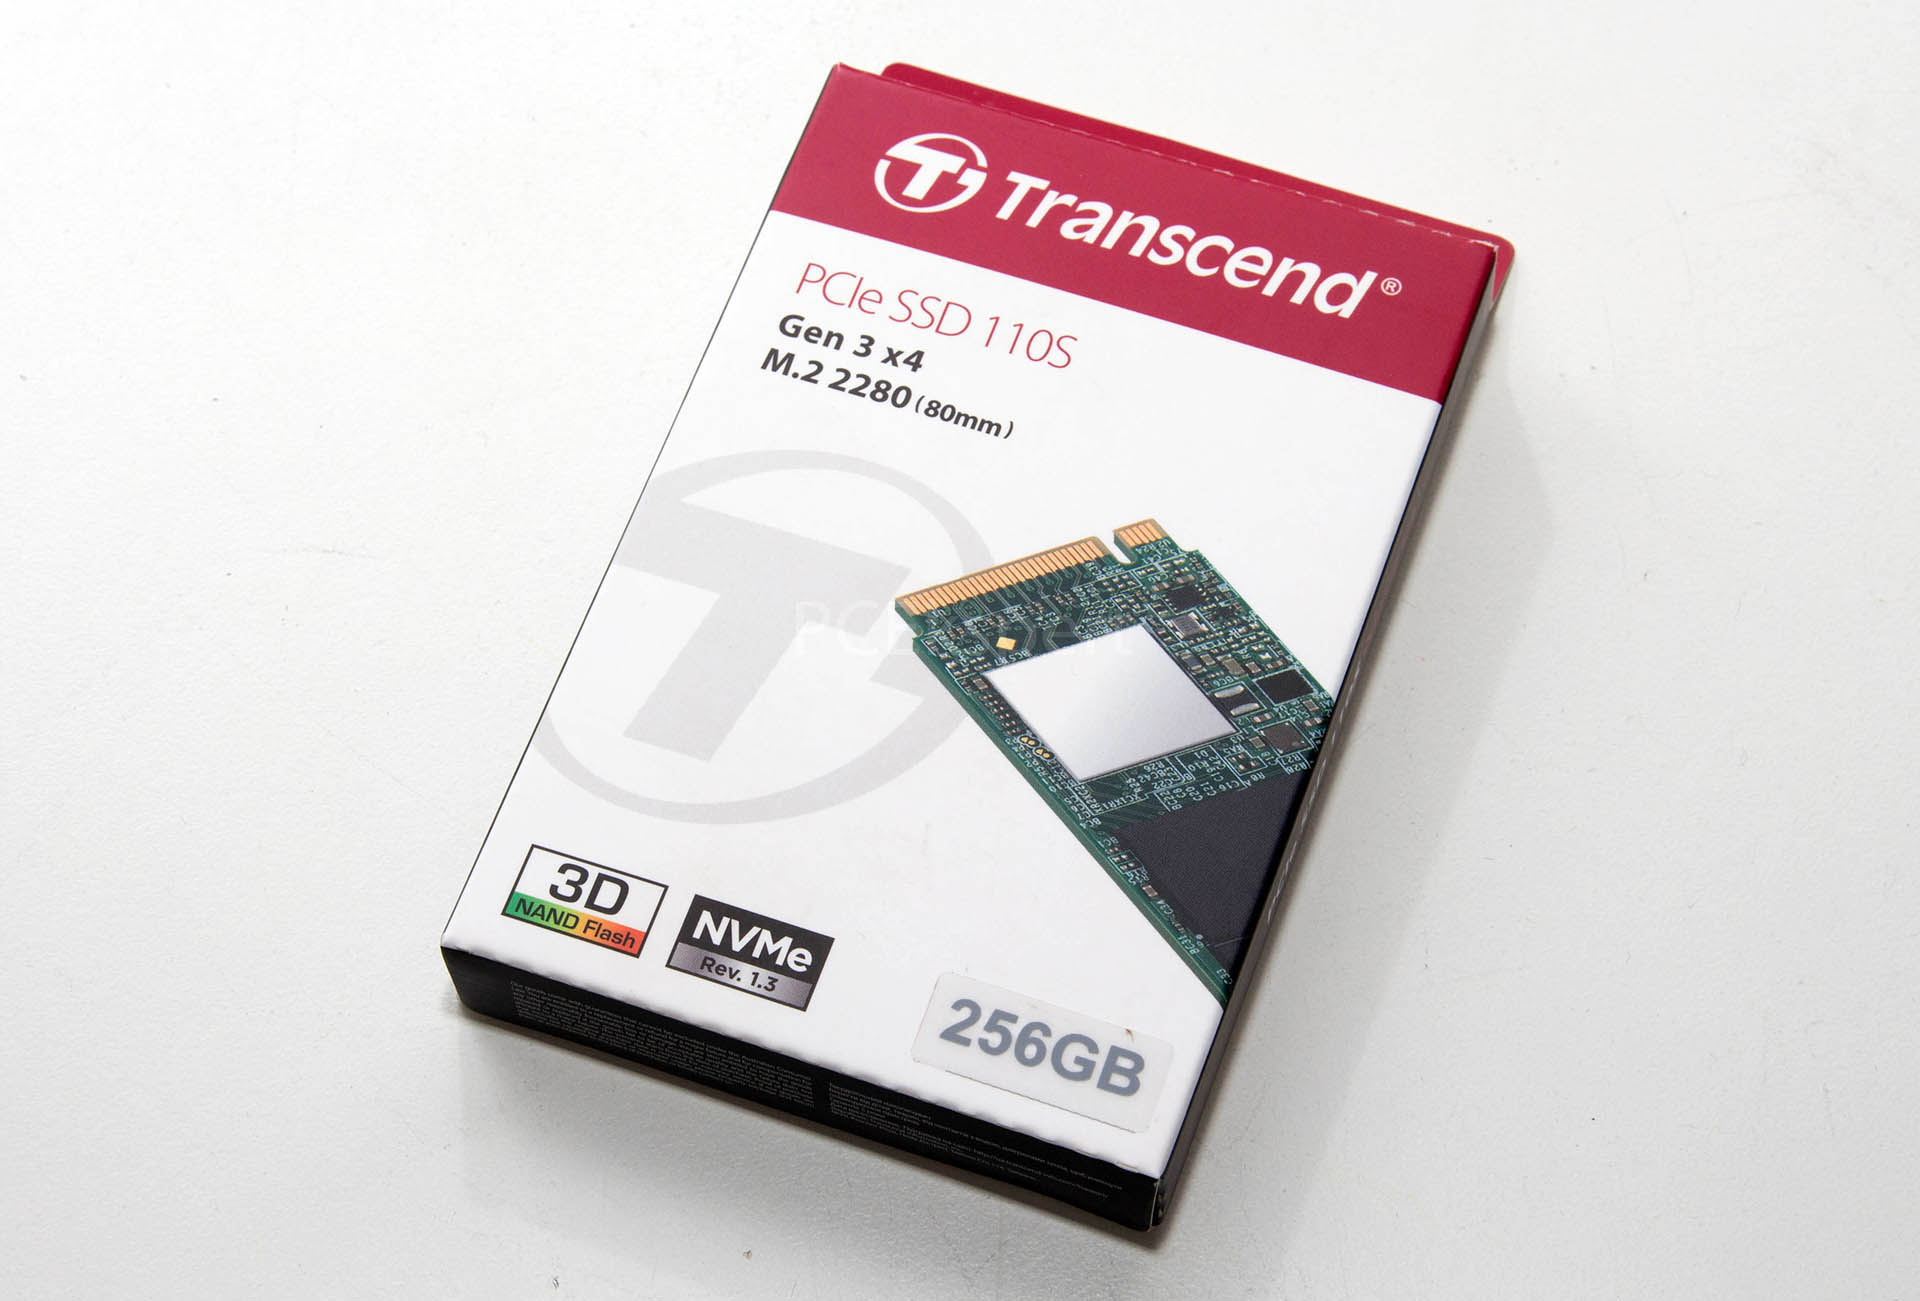 Transcend PCIe SSD 110S 256GB recenzija